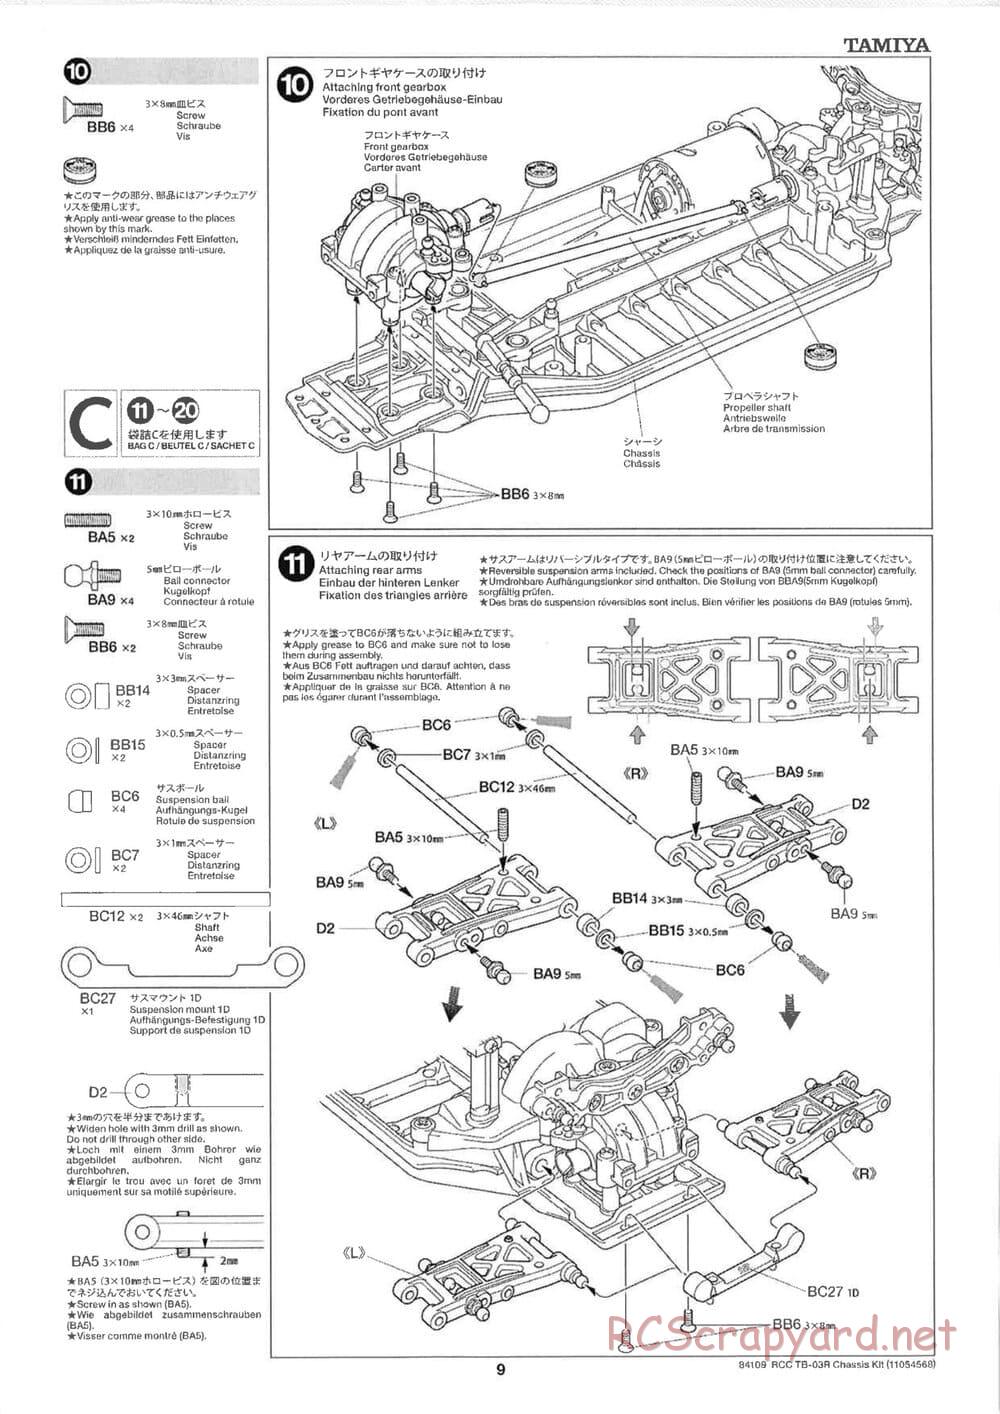 Tamiya - TB-03R Chassis - Manual - Page 9